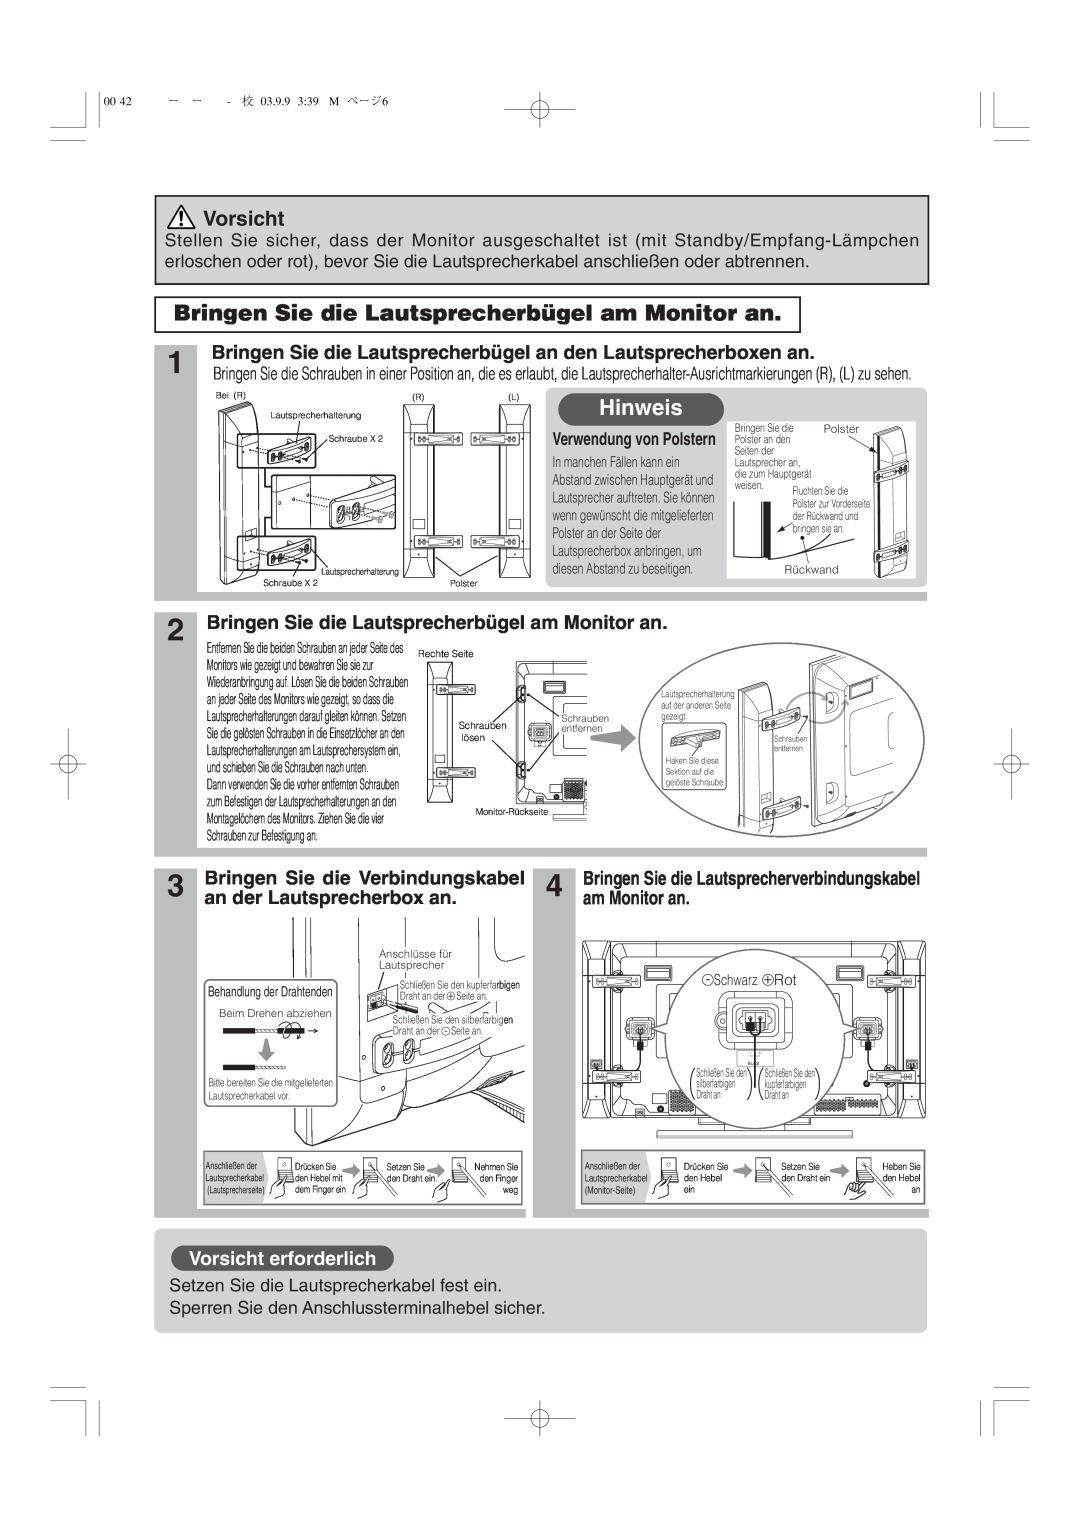 Hitachi 42PD5000 user manual Bringen Sie die Lautsprecherbügel am Monitor an, Hinweis, Vorsicht erforderlich 